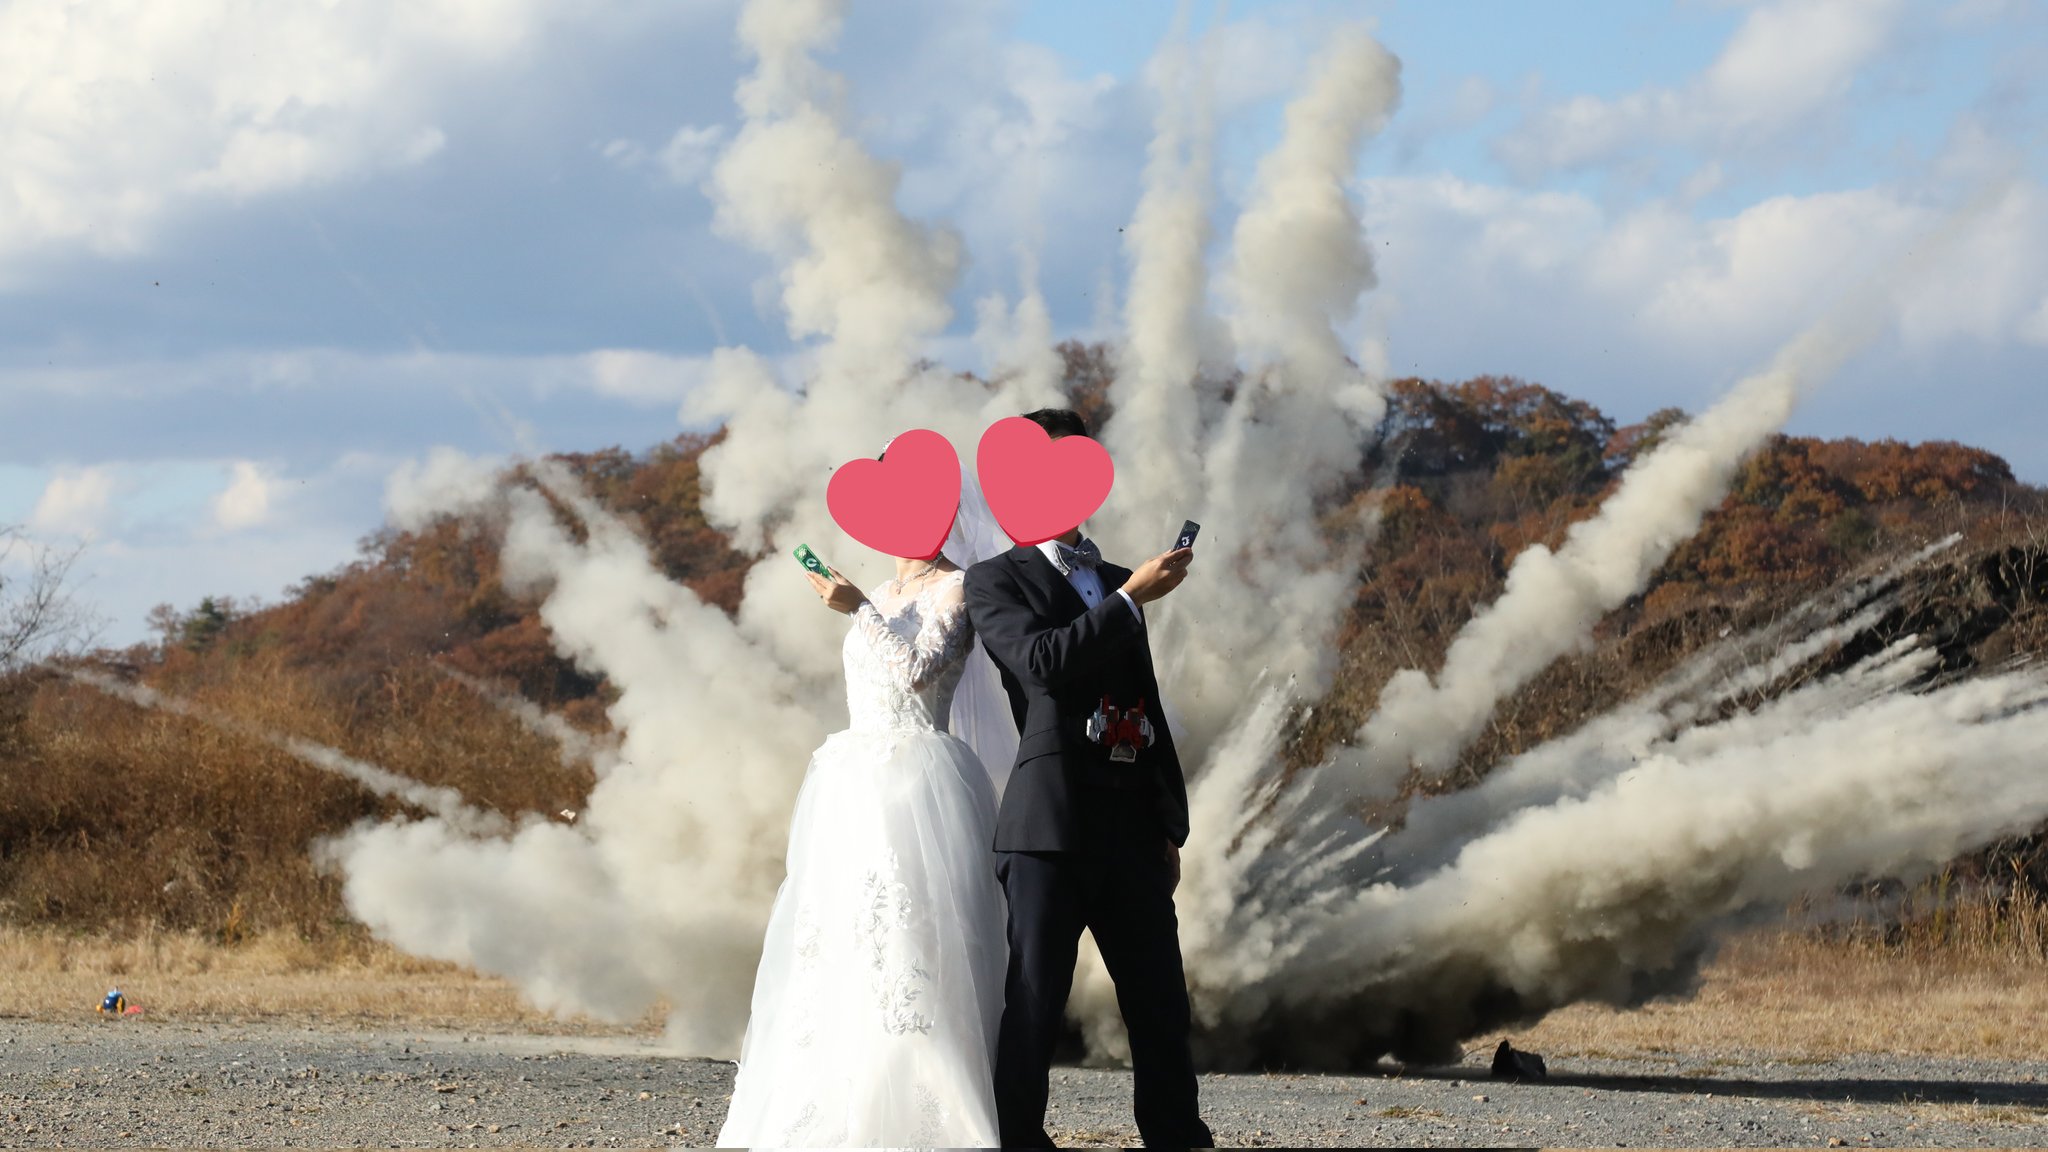 특촬물 오타쿠 부부의 결혼 사진 촬영